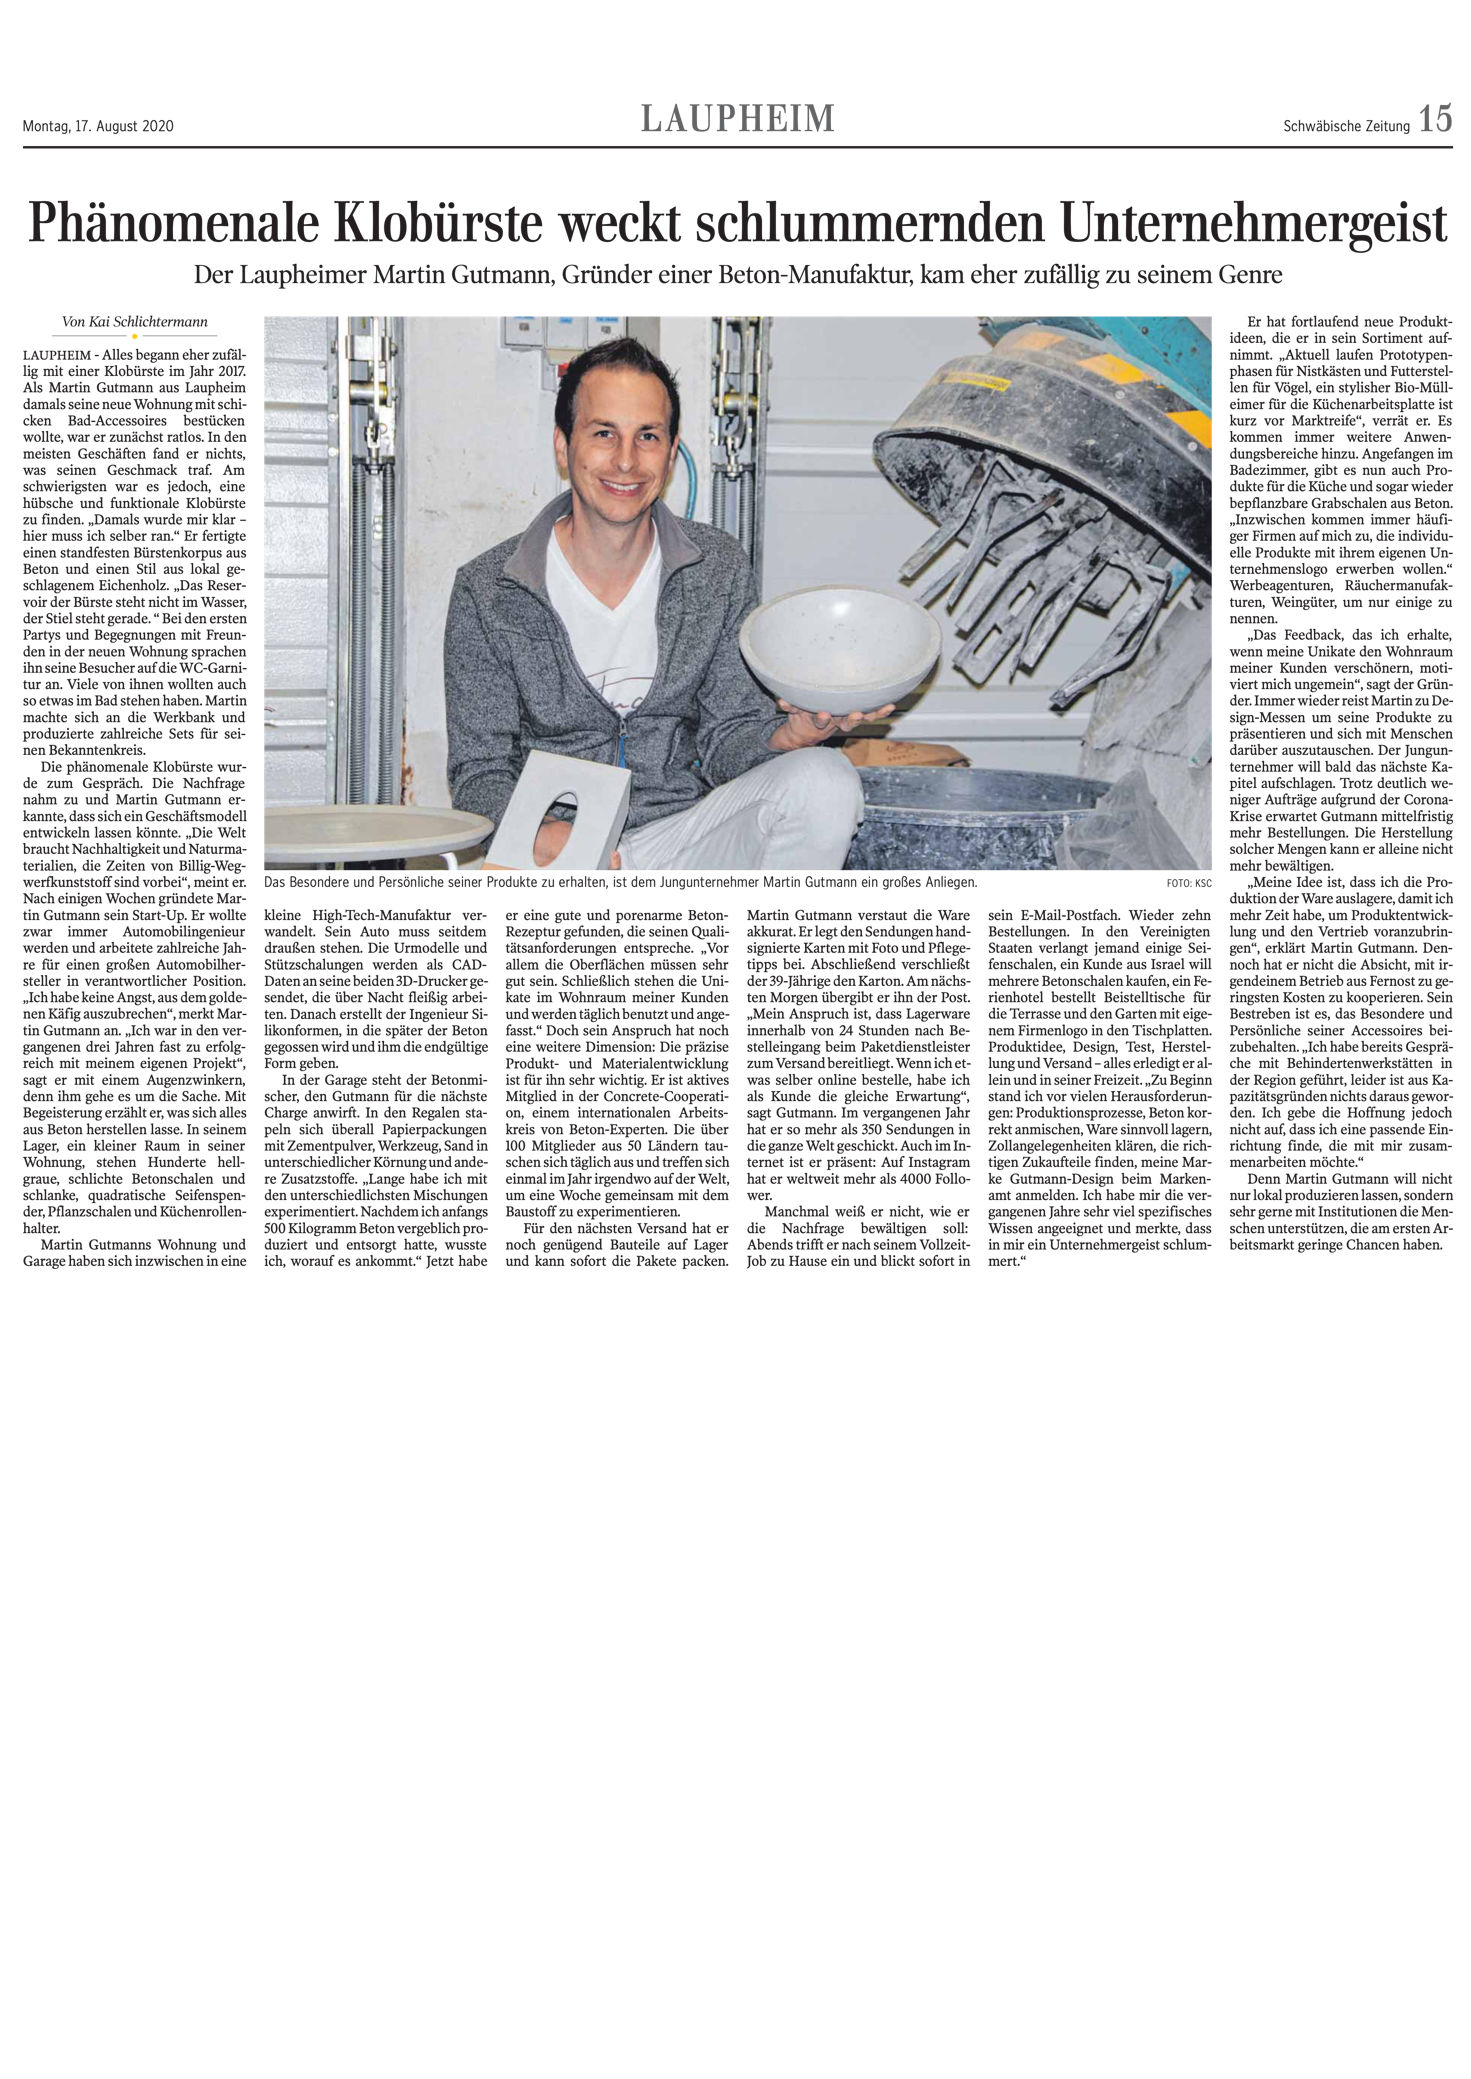 Design Klobürste - Start Up - Beton BW ULM - Artikel in Schwaebische Zeitung August 2020